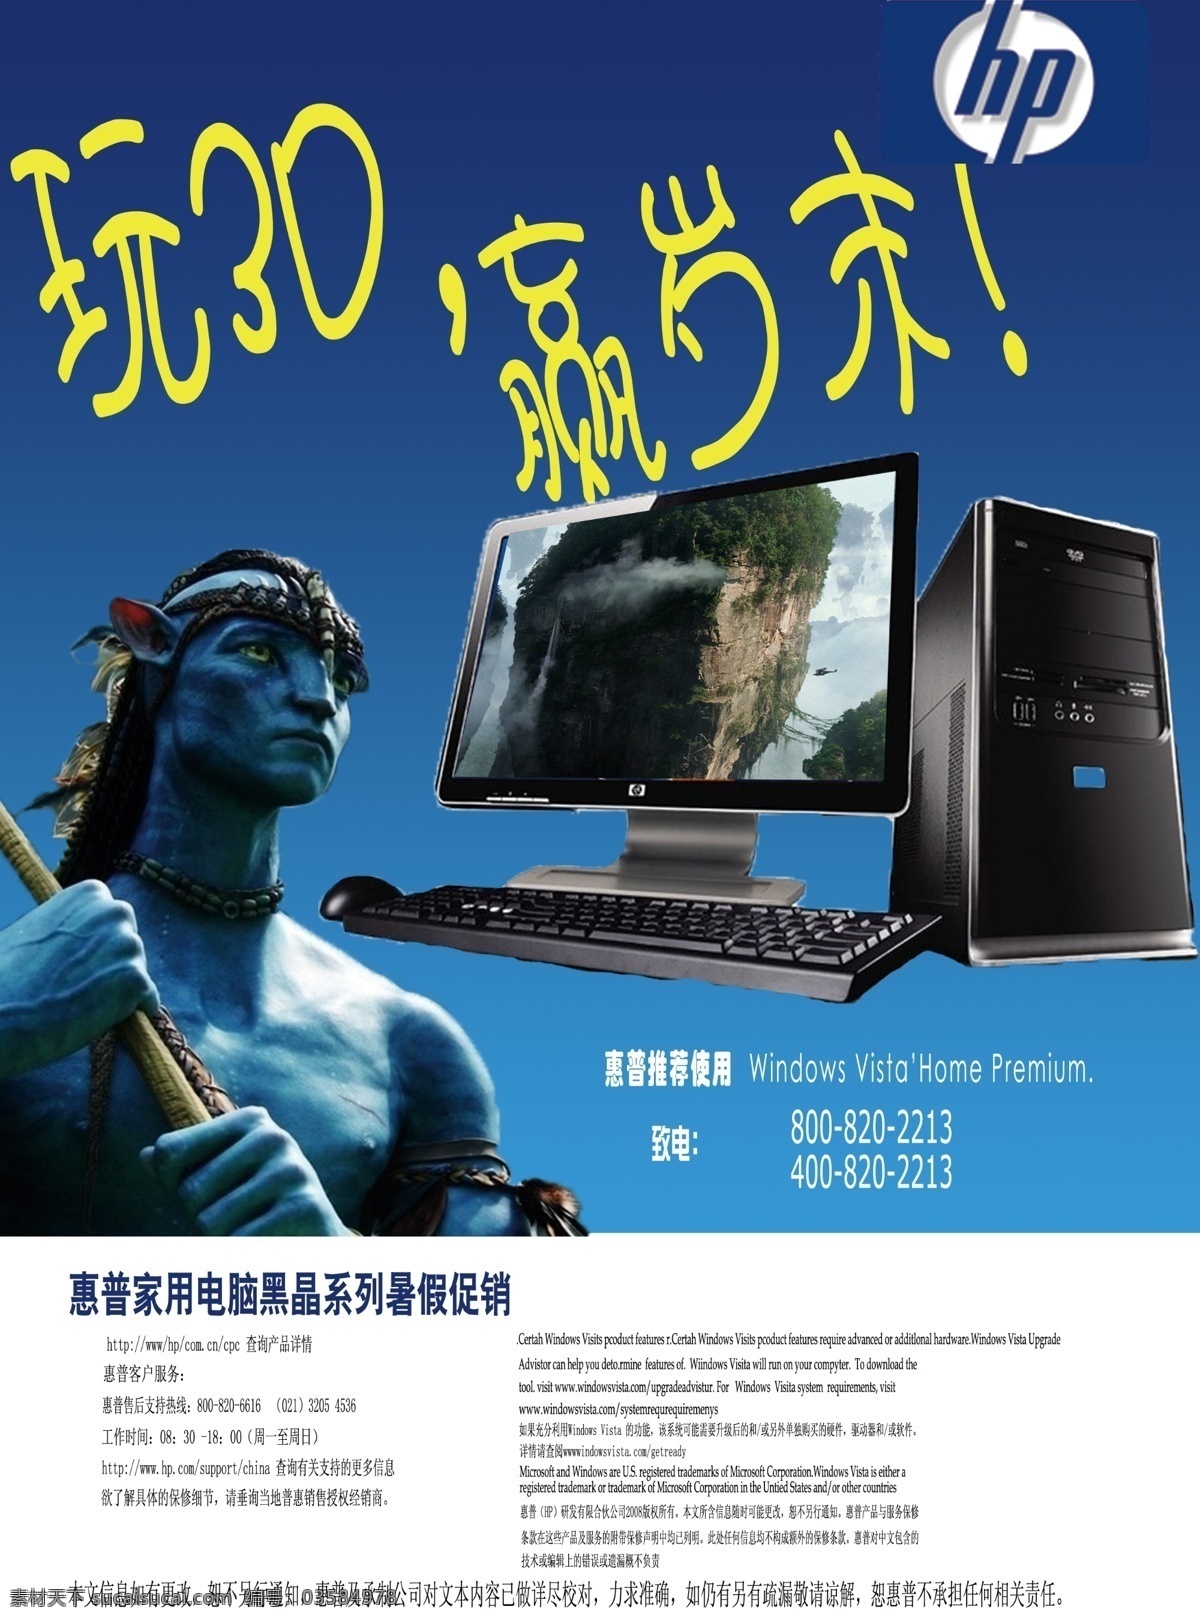 惠普电脑海报 阿凡达 惠普 电脑 机箱 标志 蓝色背景 电脑海报 psd源文件 分层 广告设计模板 源文件